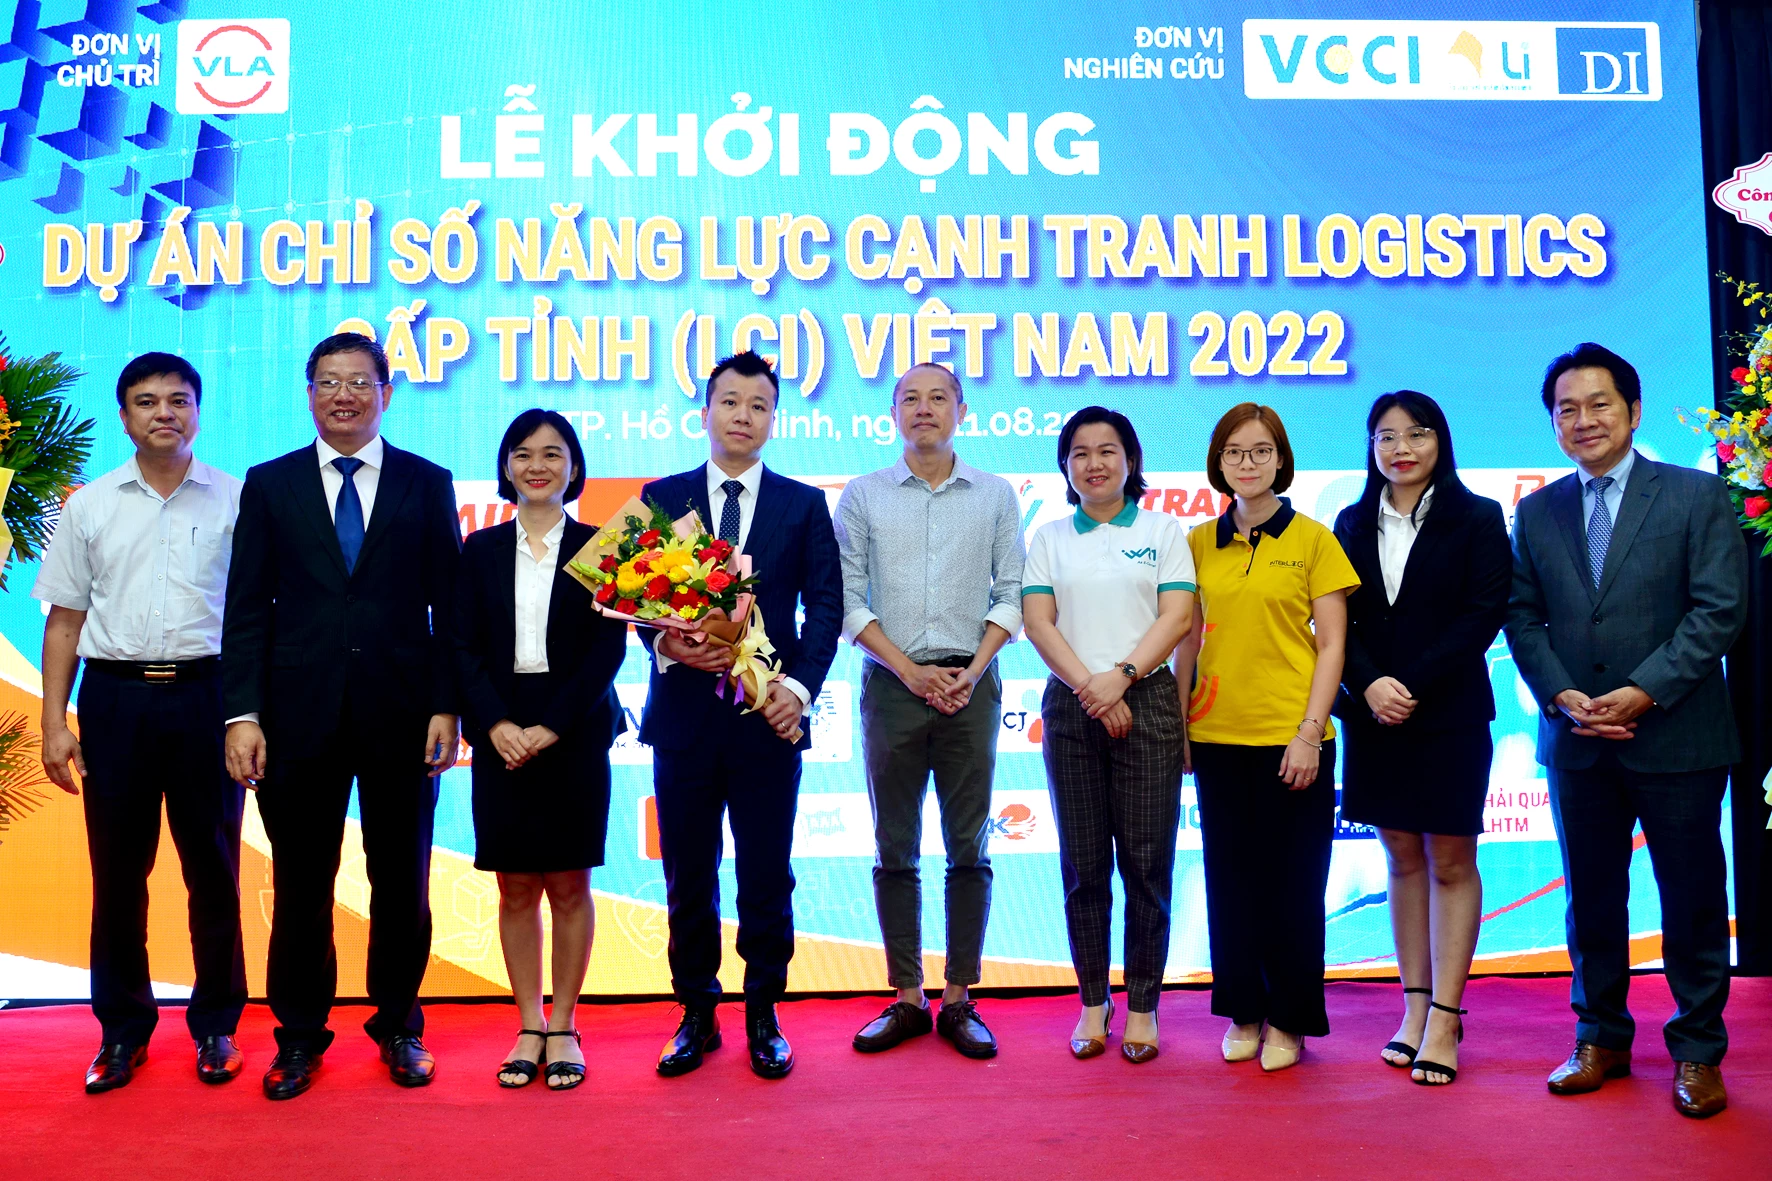 InterLOG trở thành thành viên Ban Nghiên cứu Dự án Chỉ số năng lực cạnh tranh Logistics cấp tỉnh (Logistics Competitiveness Index - LCI) Việt Nam 2022